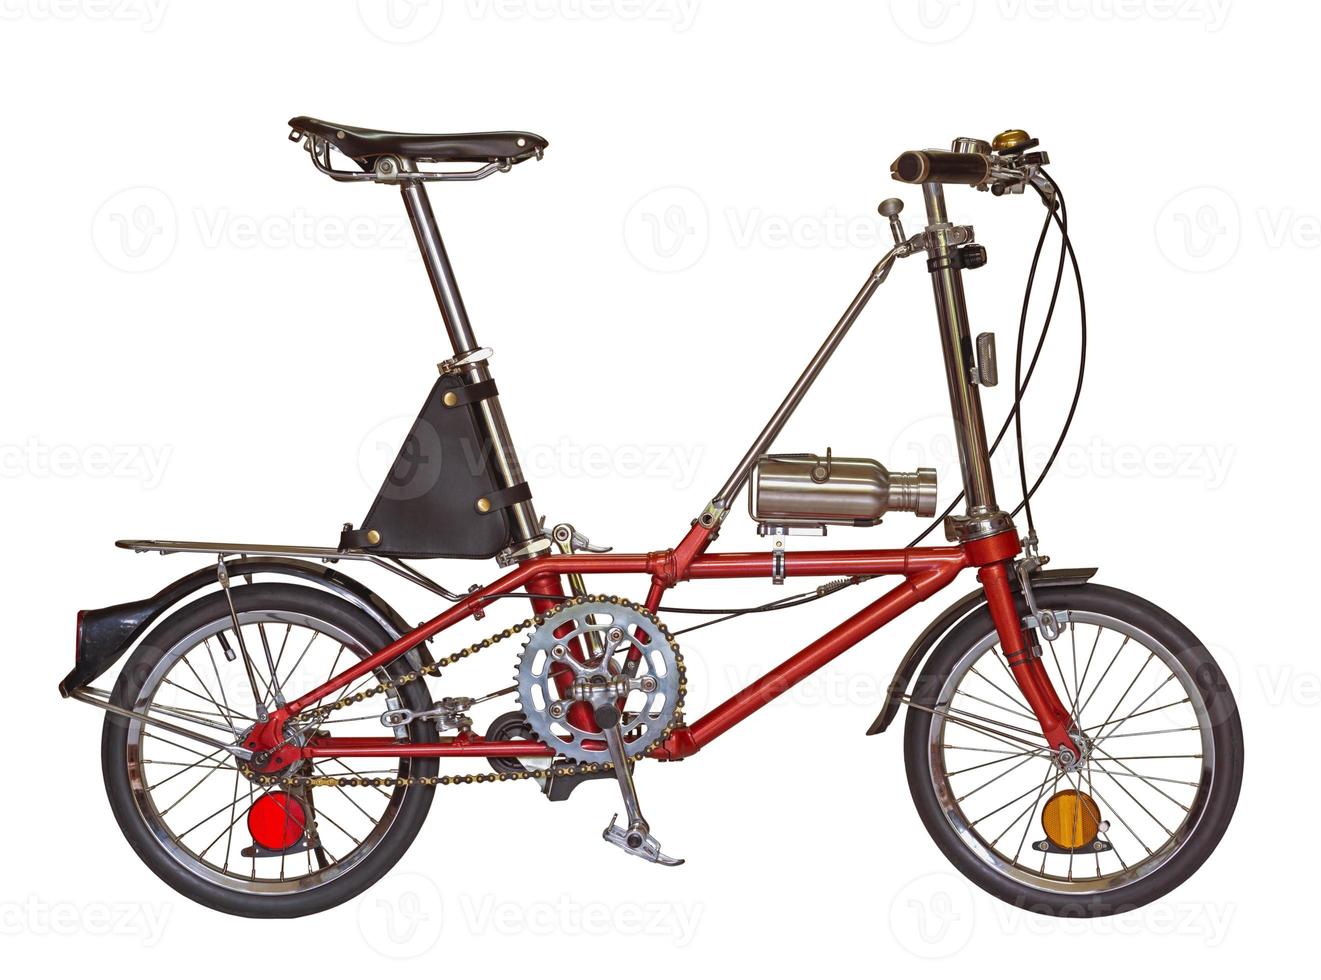 roda pequena de bicicleta vermelha isolada em um fundo branco com traçado de recorte foto